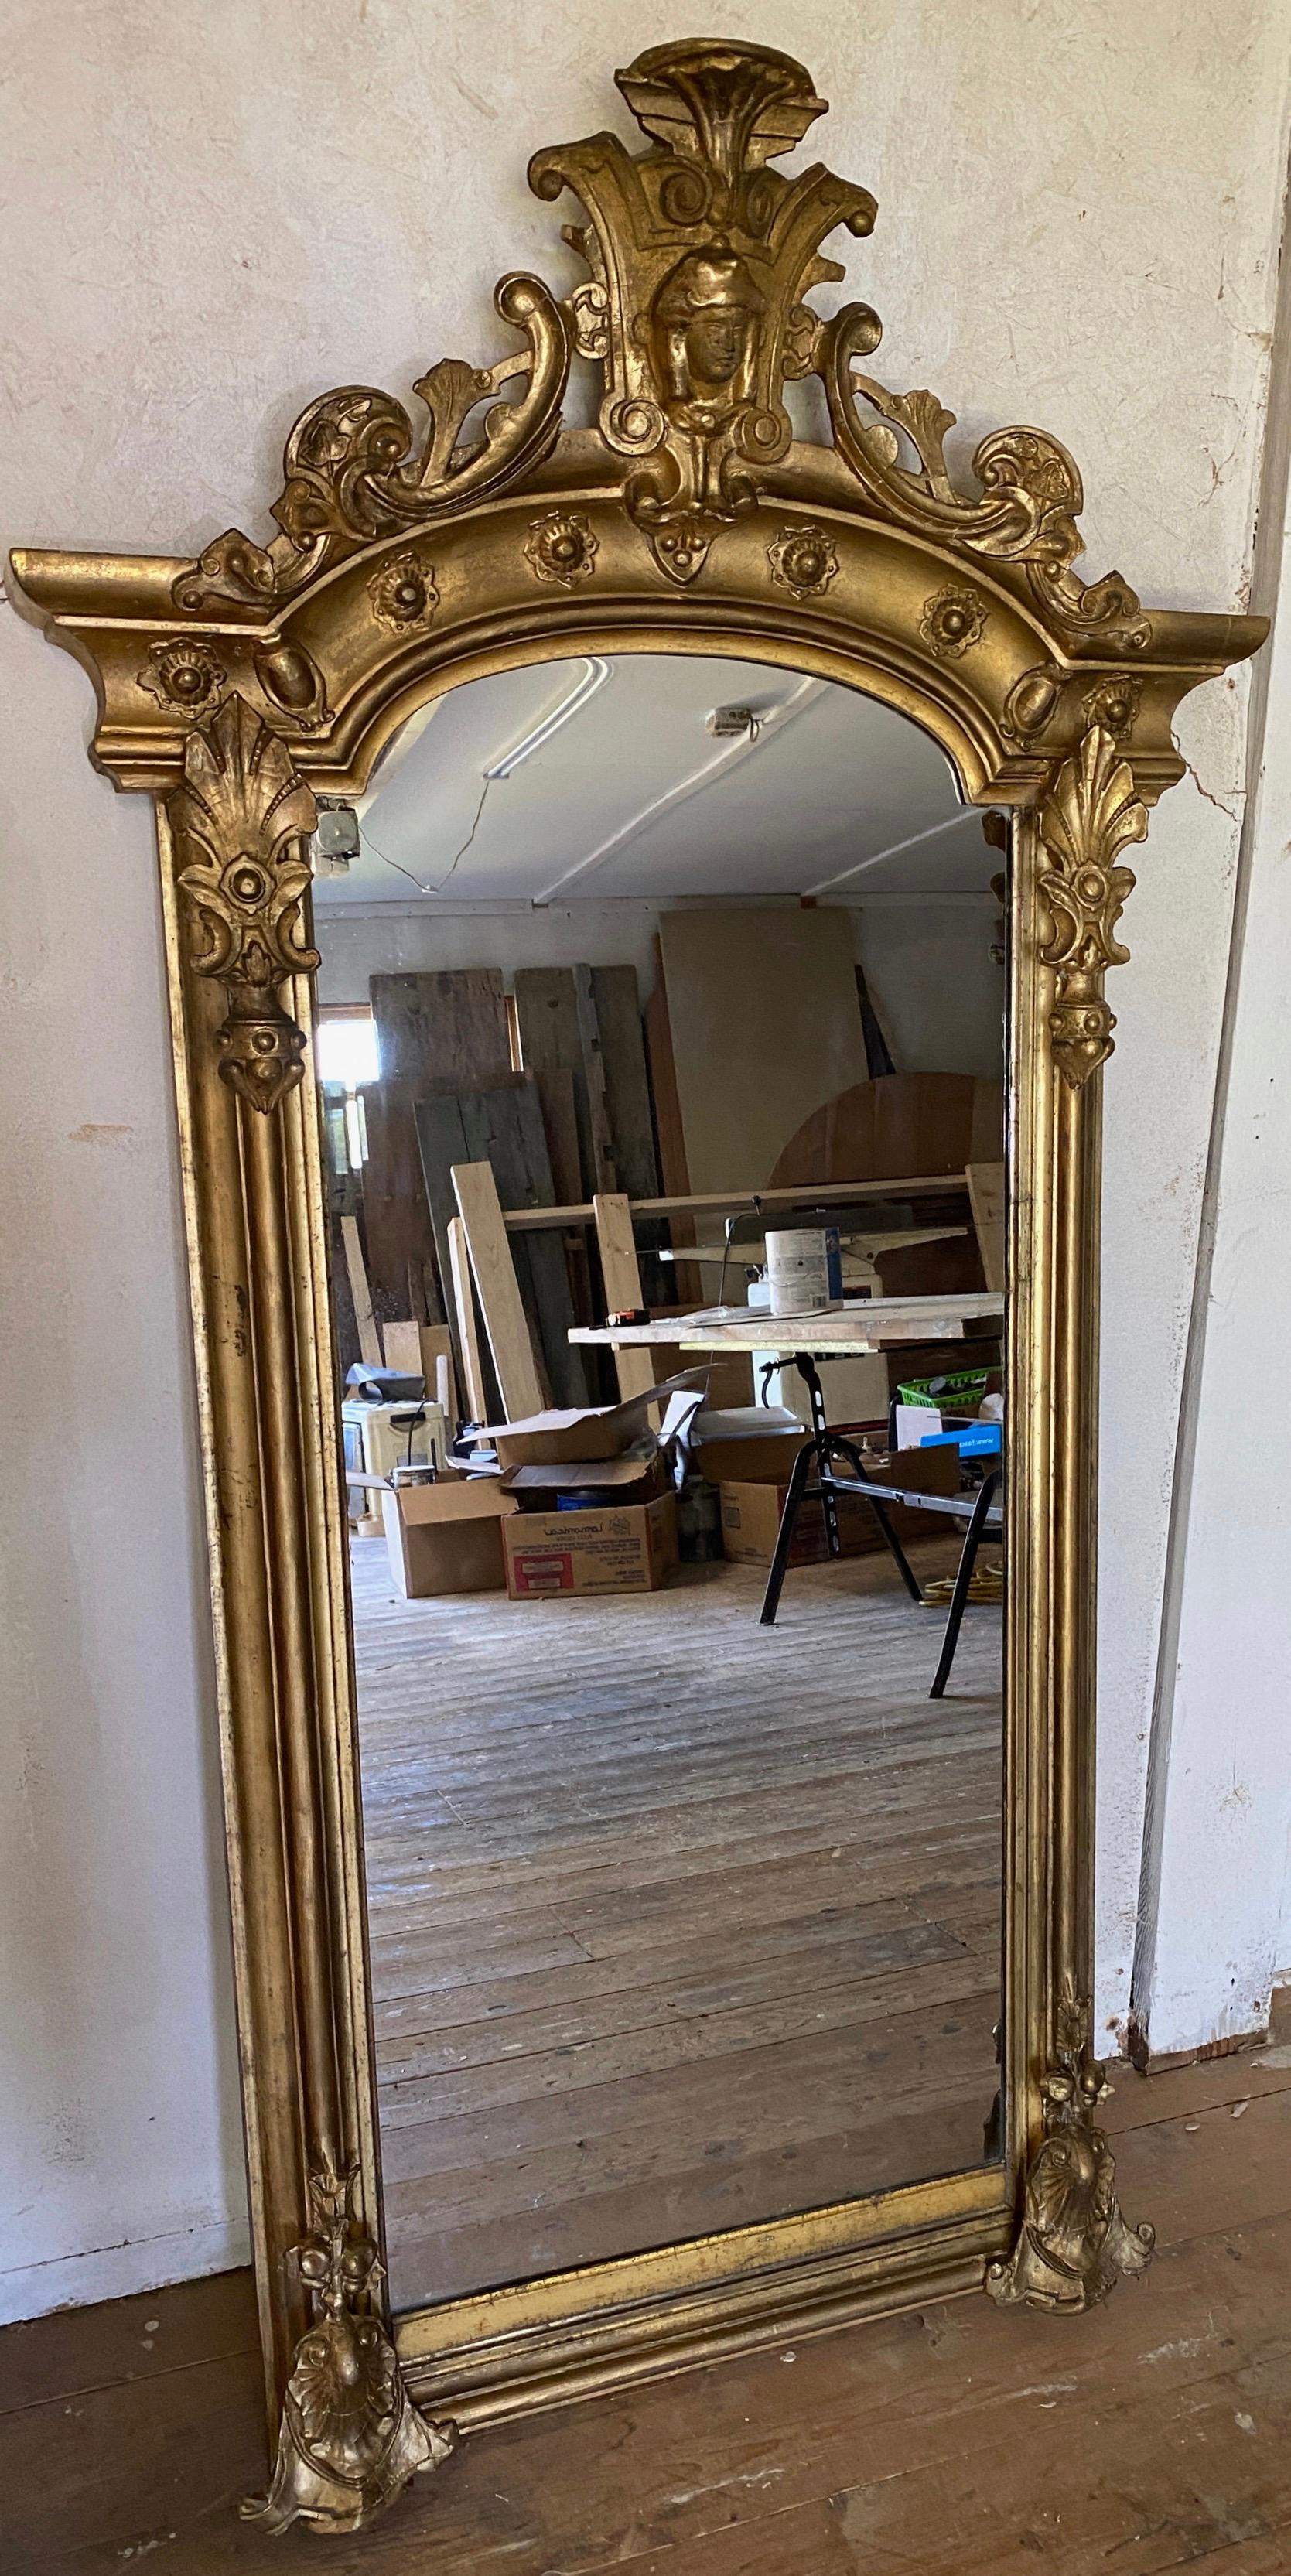 Rare grand miroir de style baroque américain en bois doré et composition, avec une crête flamboyante surmontant le cadre décoré de manière élaborée.  Ce miroir fera sensation dans n'importe quel espace, qu'il s'agisse d'un hall d'entrée ou d'un